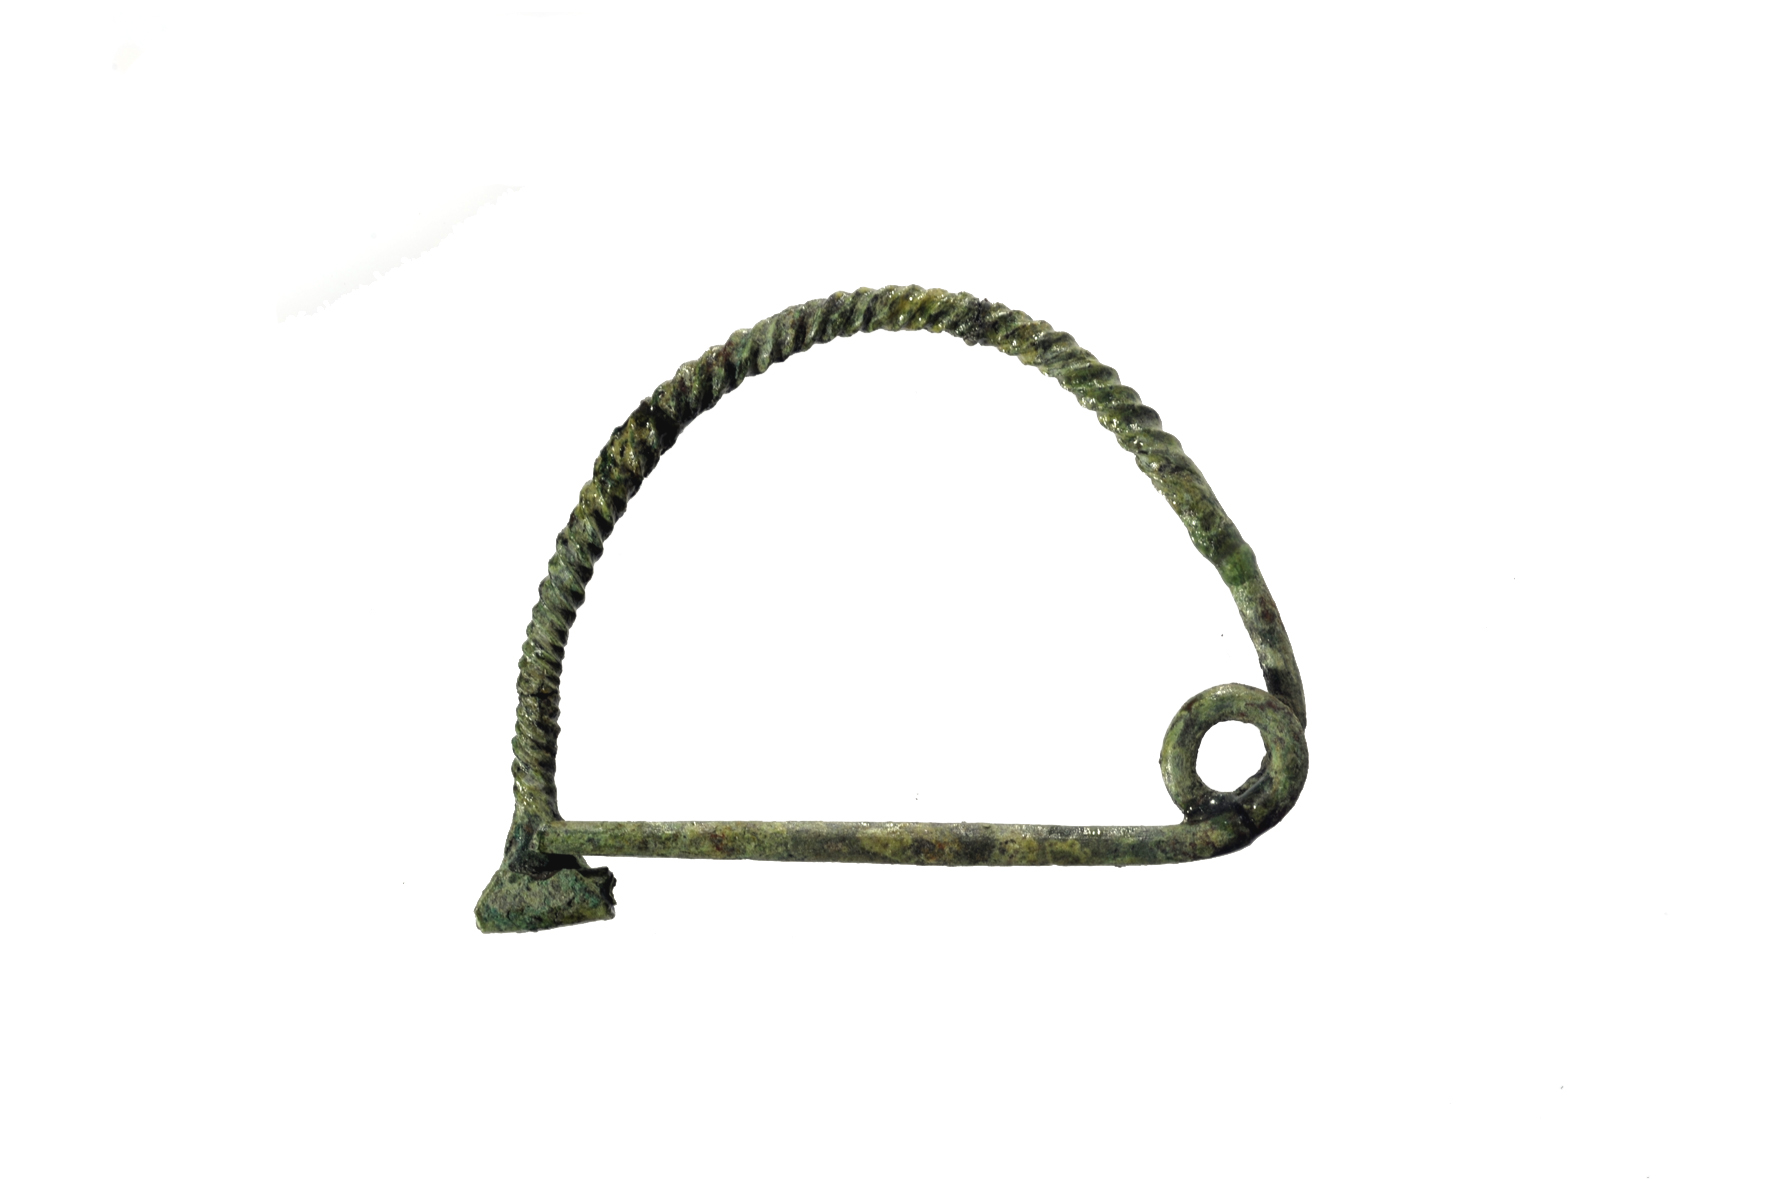 fibula/ ad arco semplice ritorto, tipo con staffa a base allungata/var. A (Von Eles) - Cultura proto-veneta (XI-X sec. a.C)